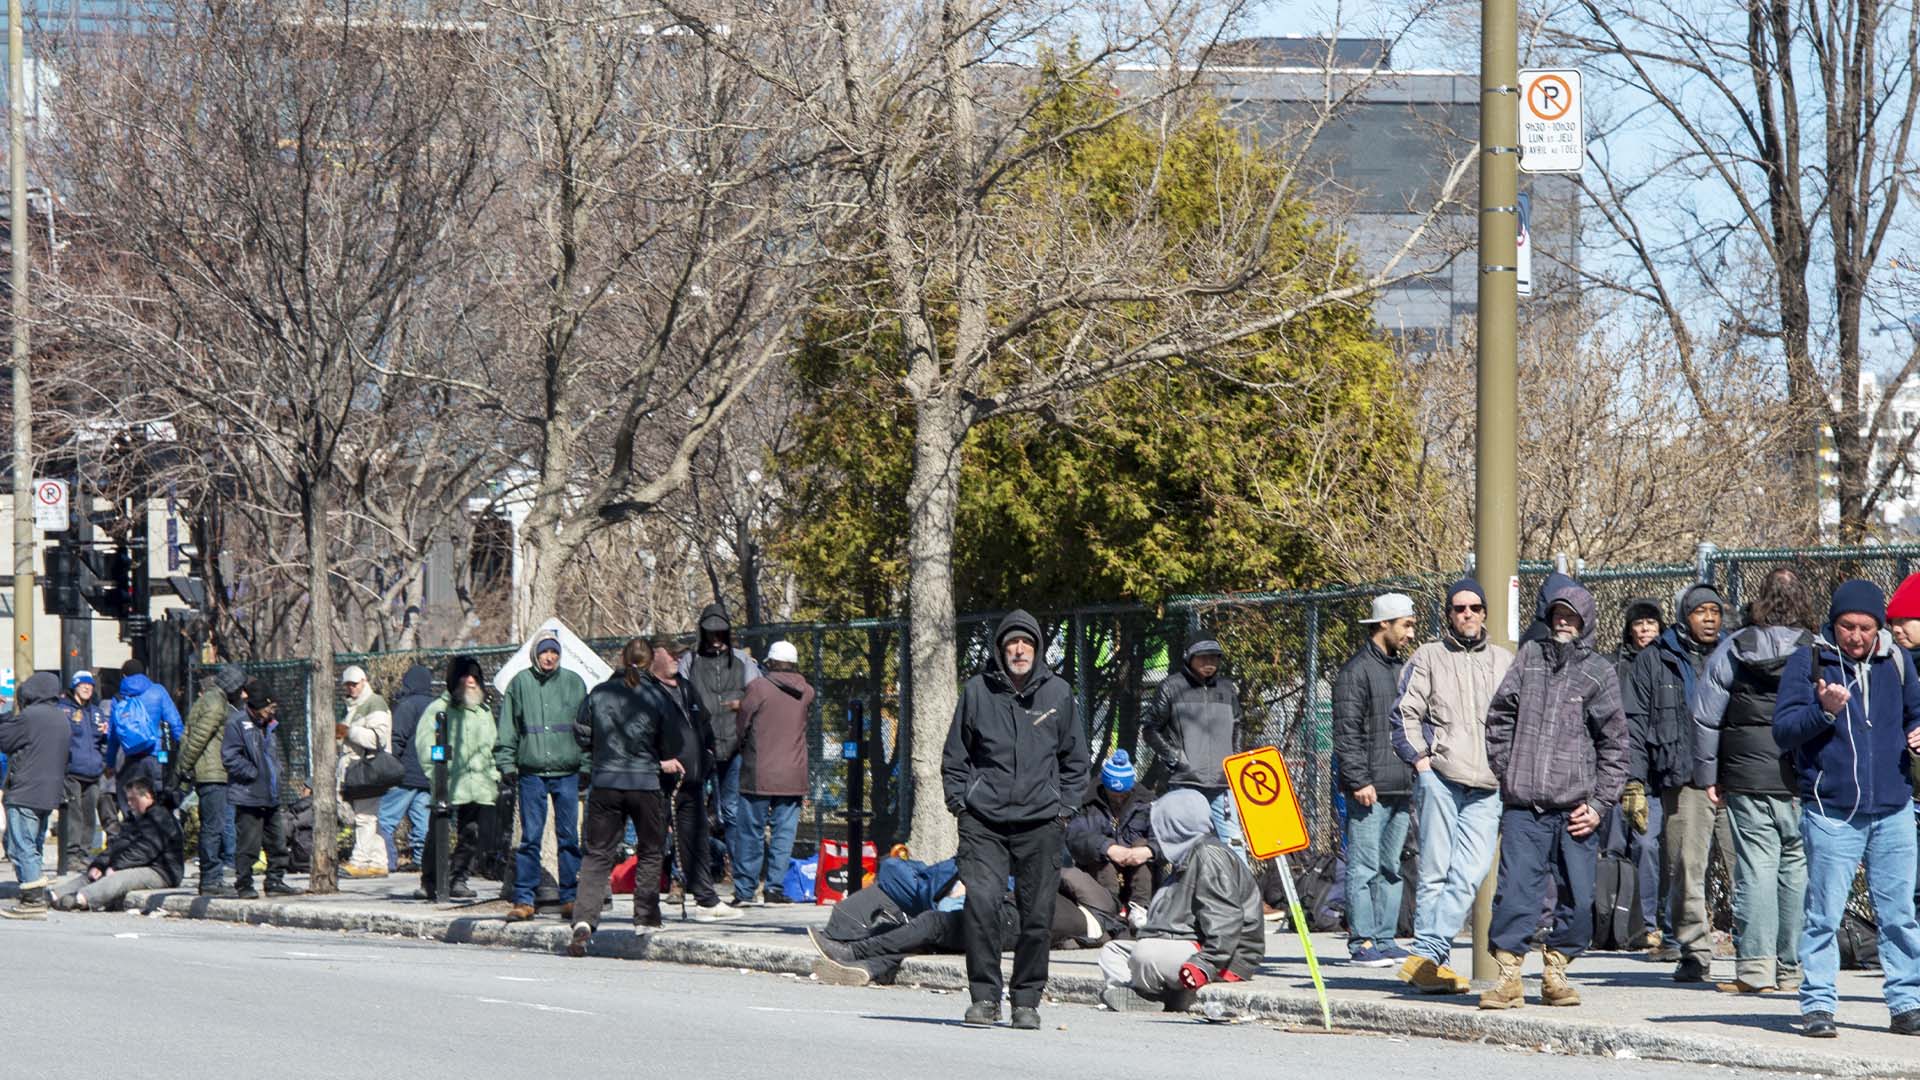 Des gens font la queue pour entrer dans un refuge pour sans-abri le mardi 31 mars 2020 à Montréal.LA PRESSE CANADIENNE/Ryan Remiorz